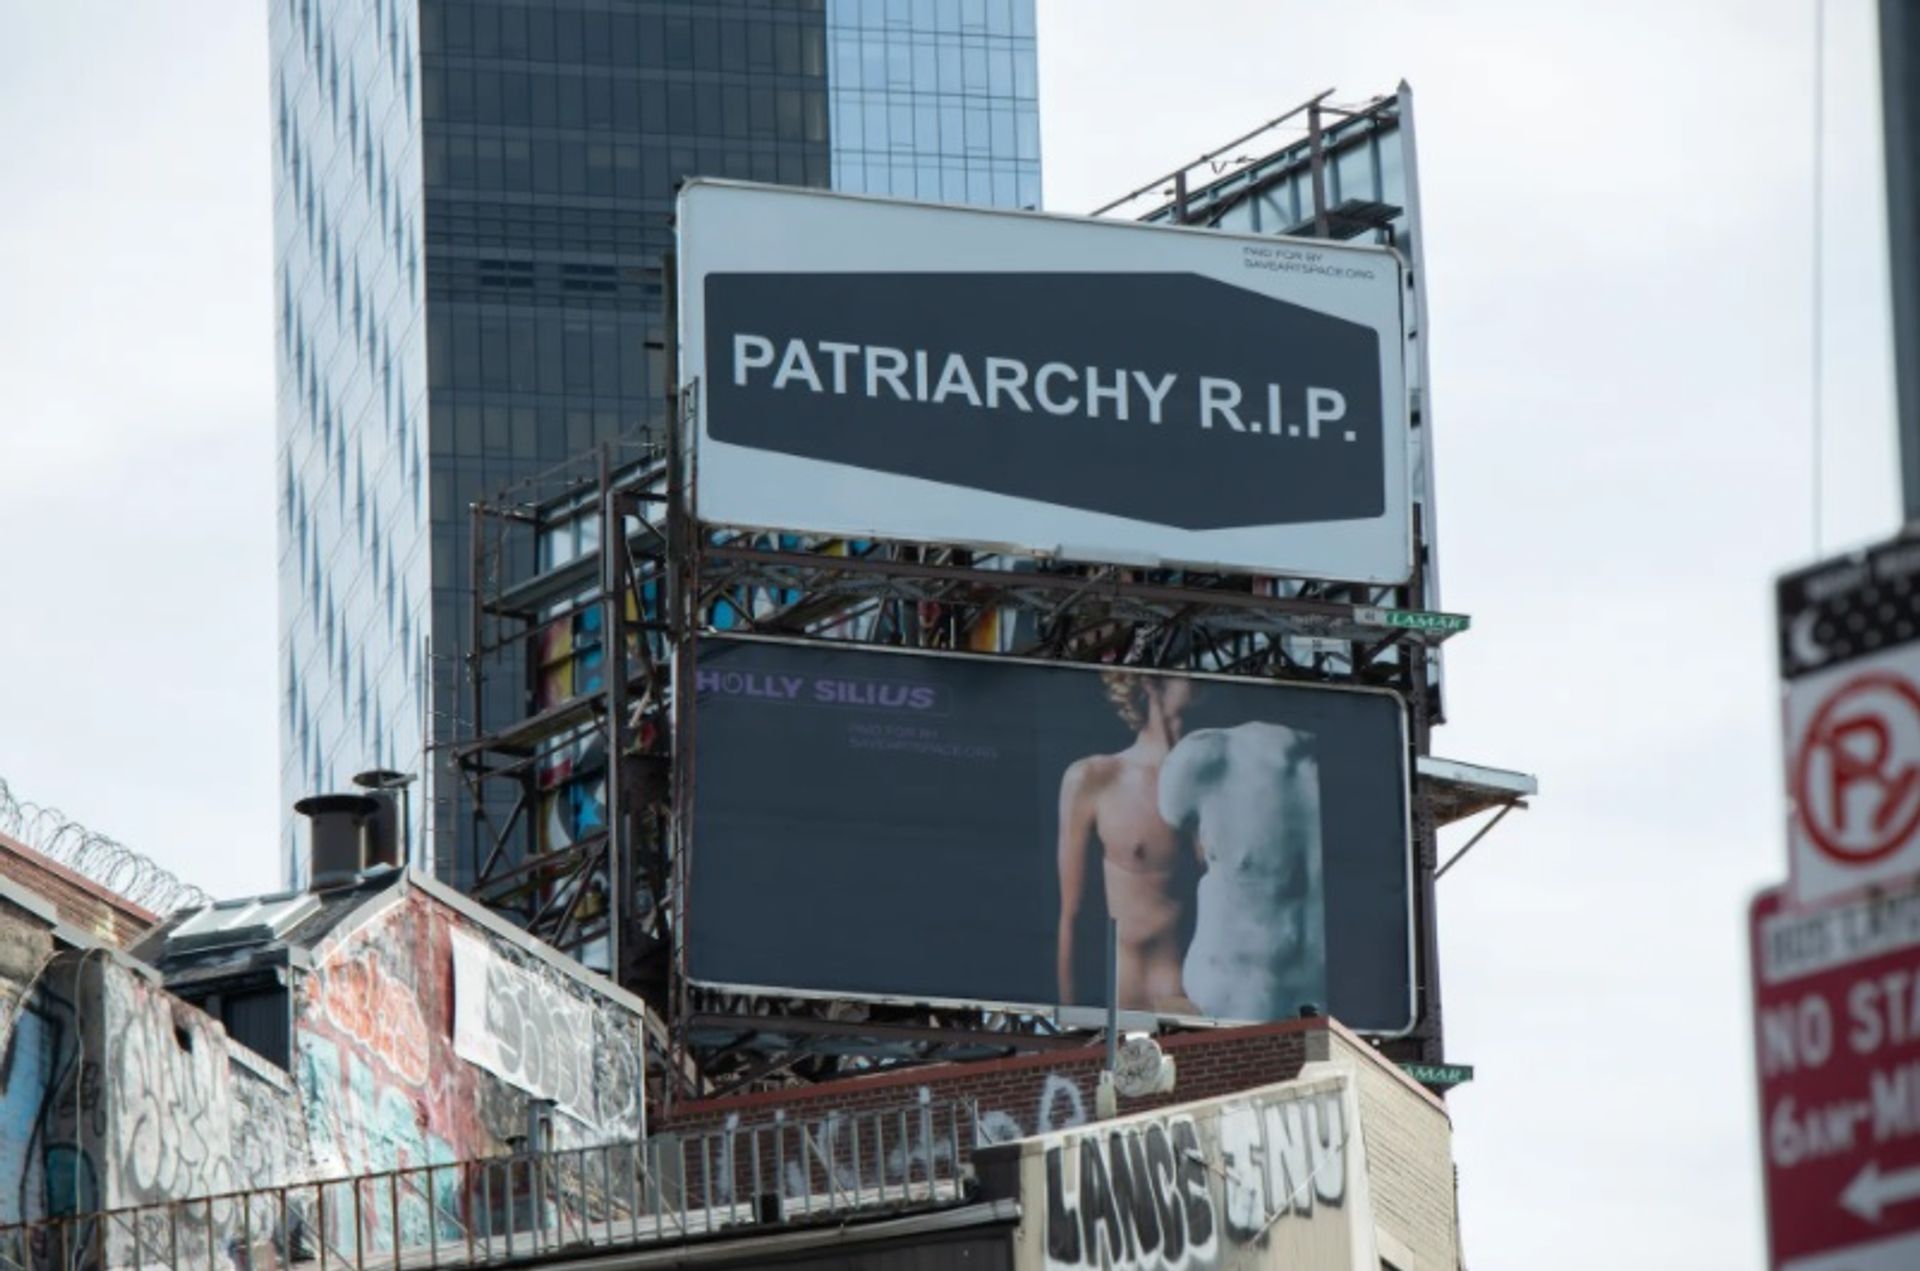 שלטי חוצות מאת Nadya Tolokonnikova (למעלה) והולי סיליוס (למטה) במנהטן התחתית כחלק מהתערוכה Patriarchy RIP של SaveArtSpace

תמונה מאת סקוט סטנגר